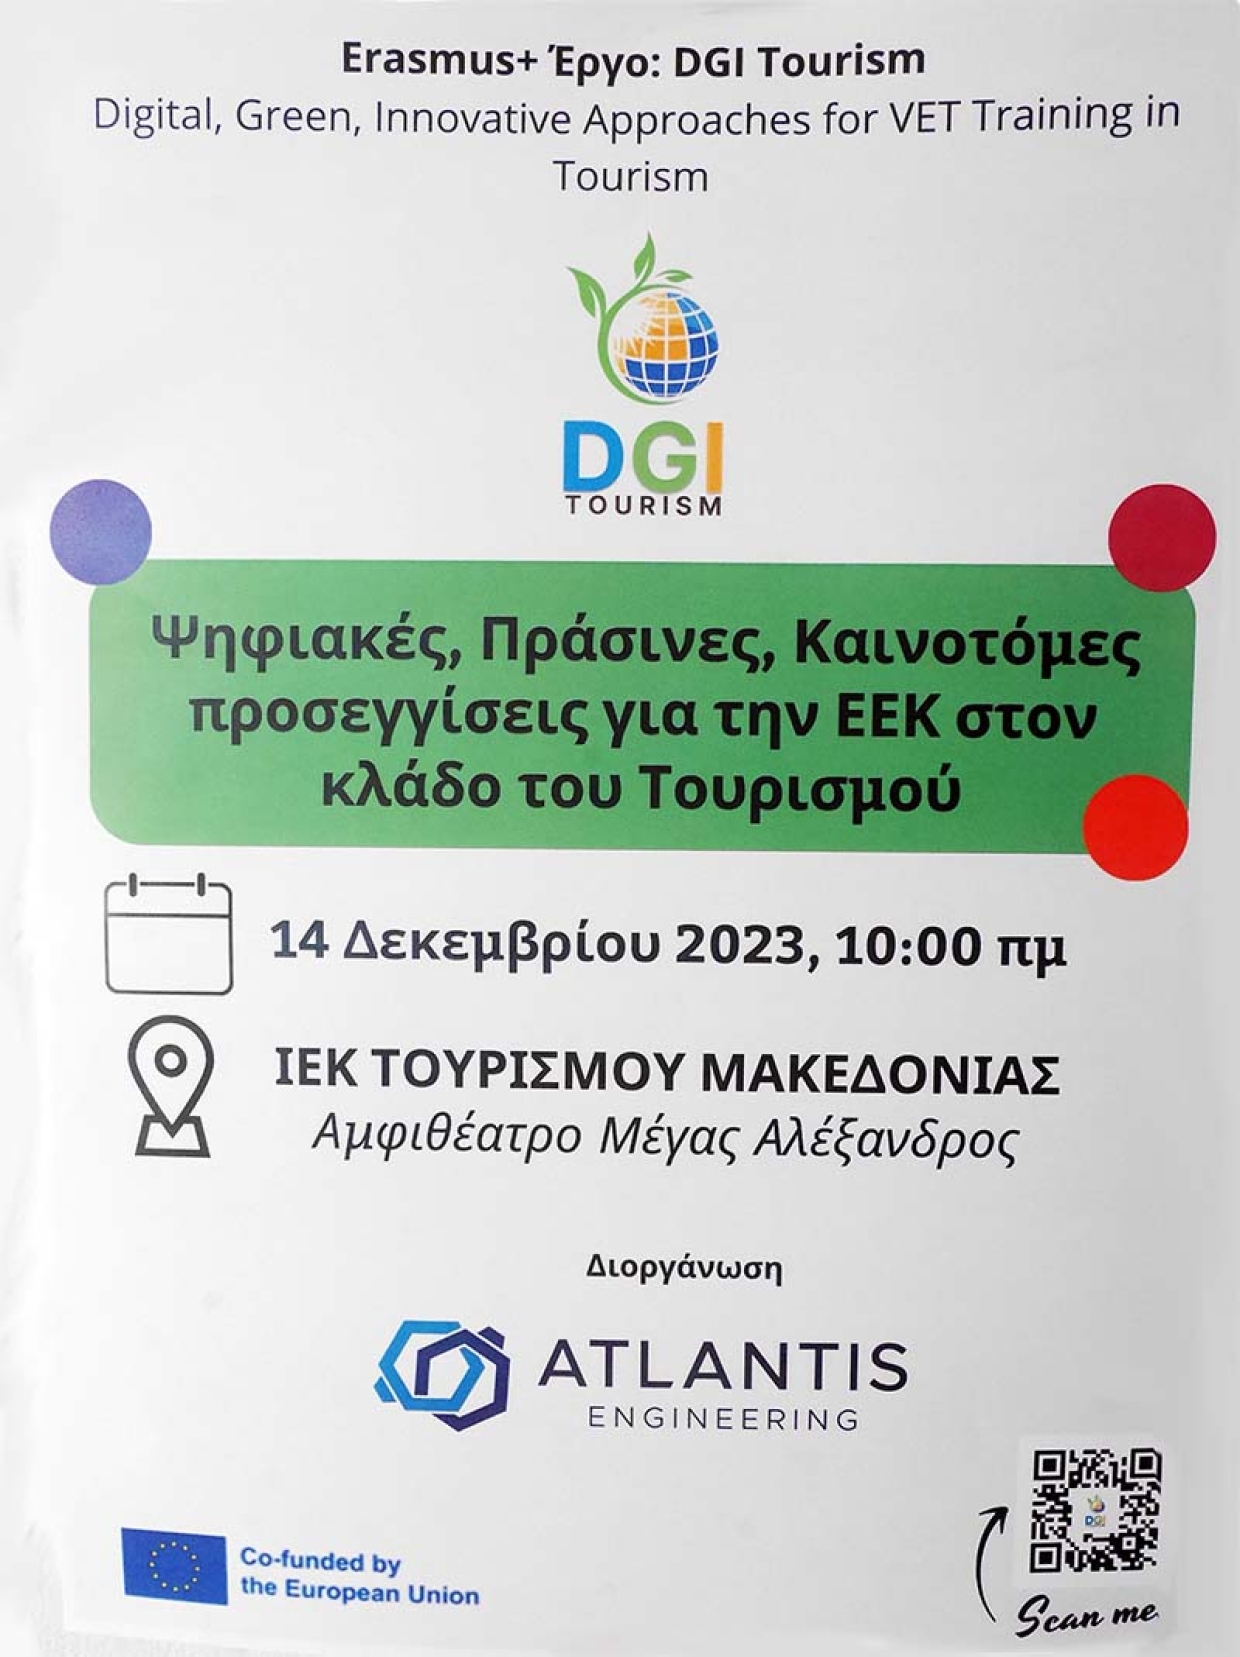 Υλοποίηση Εκδήλωσης από την Atlantis Engineering στο Ι.Ε.Κ. Τουρισμού Μακεδονίας.